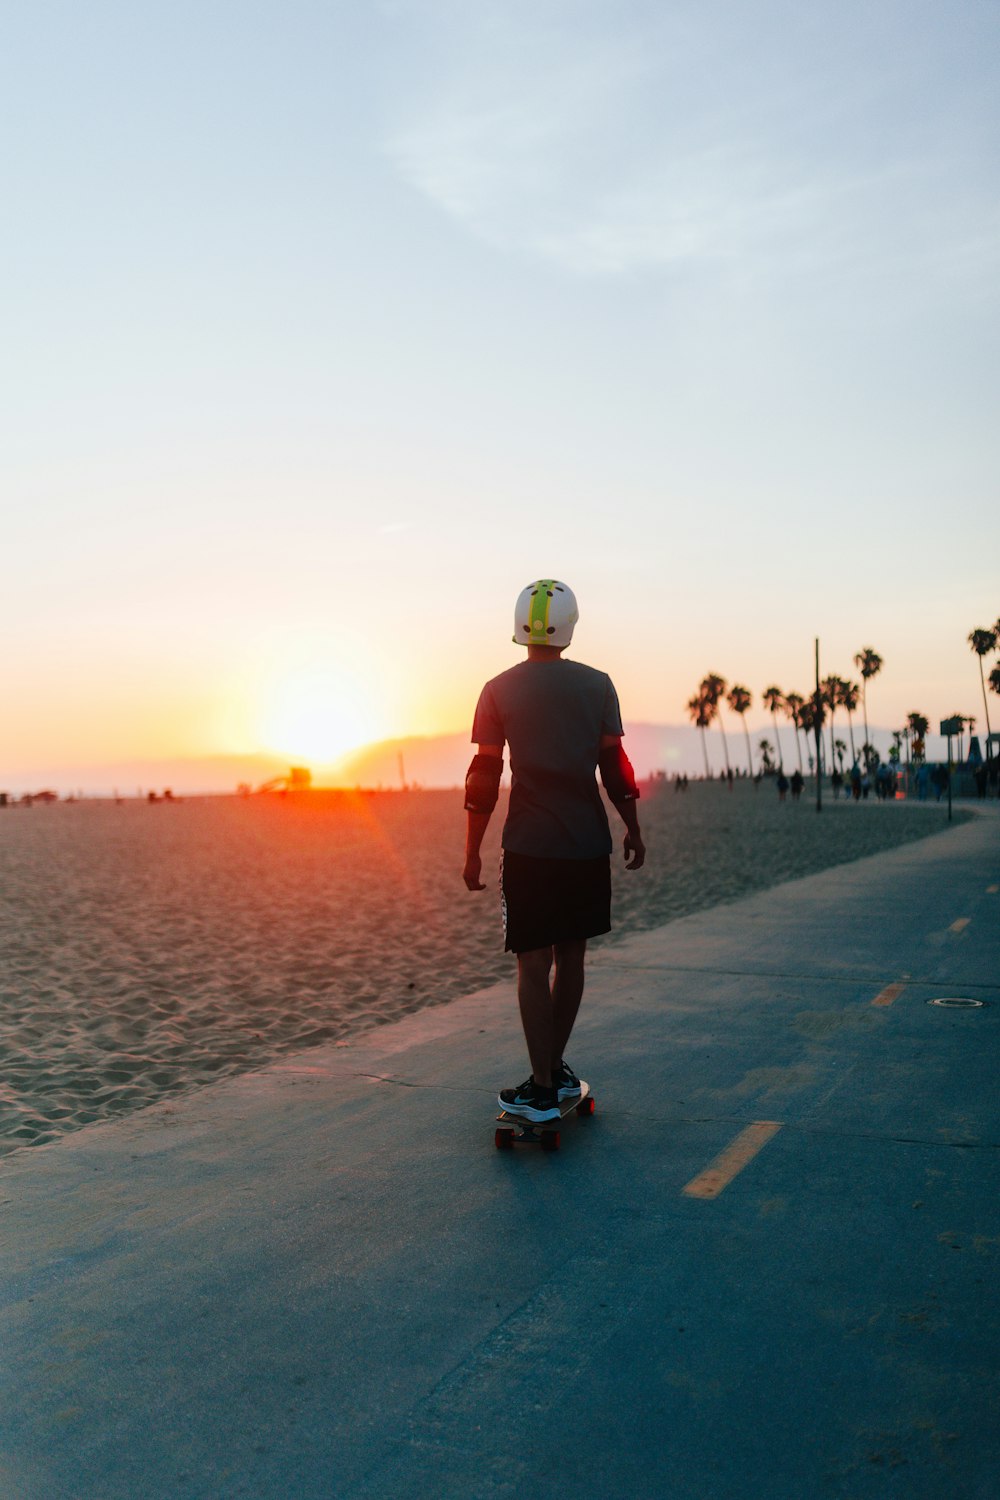 a man riding a skateboard down a road